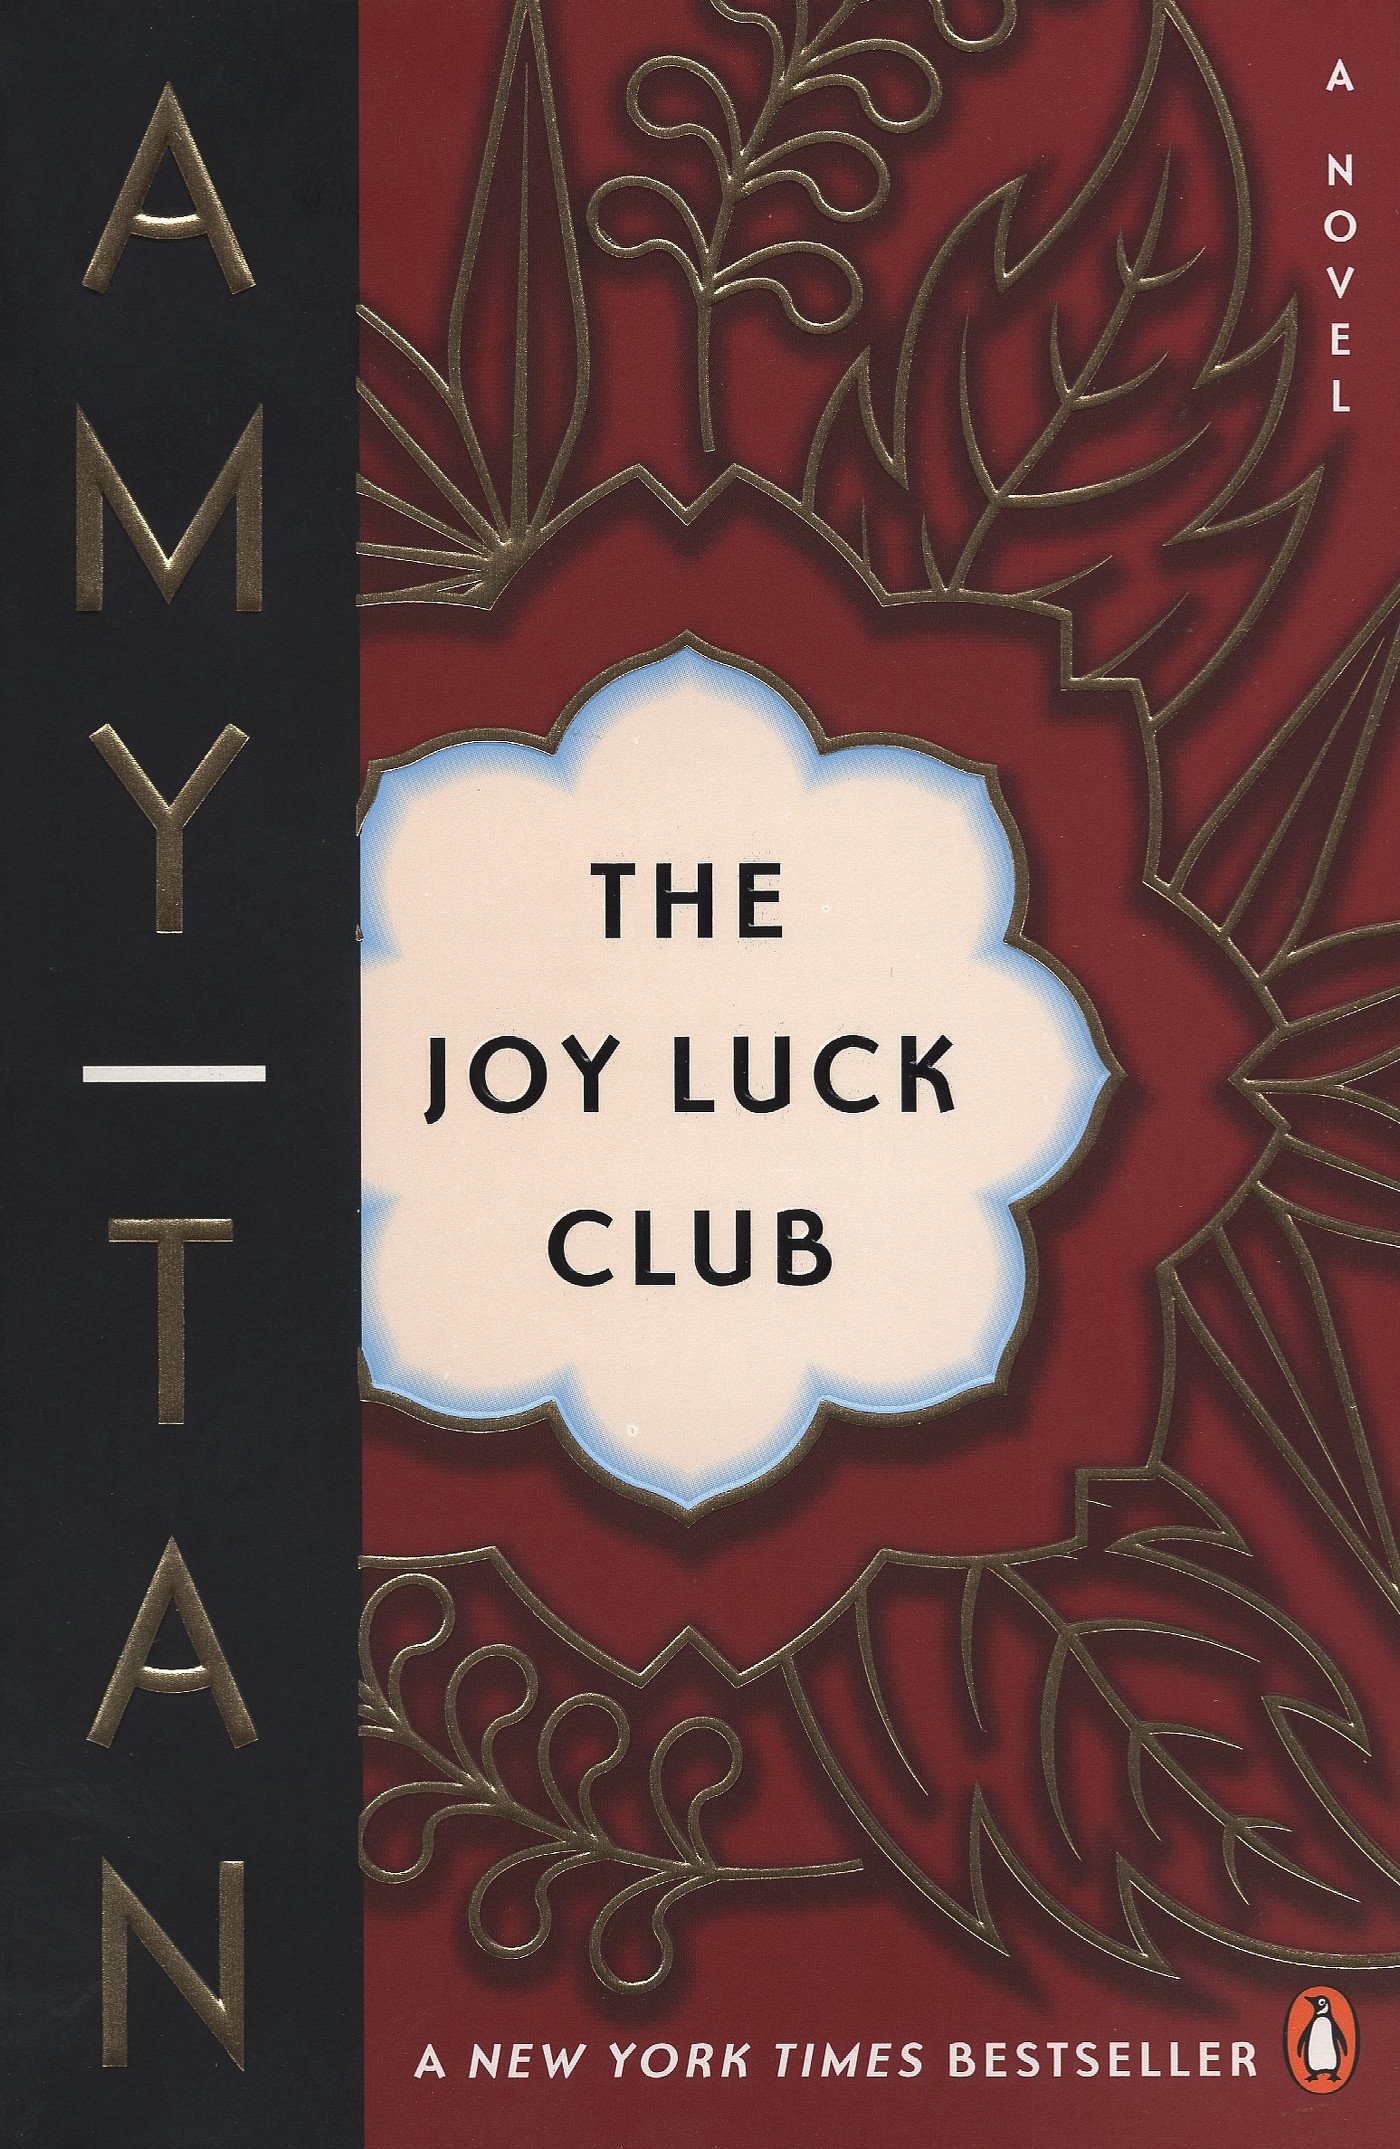 amy tam (谭恩美)的 joy luck club (喜福会) 可以算是被引用最多的用